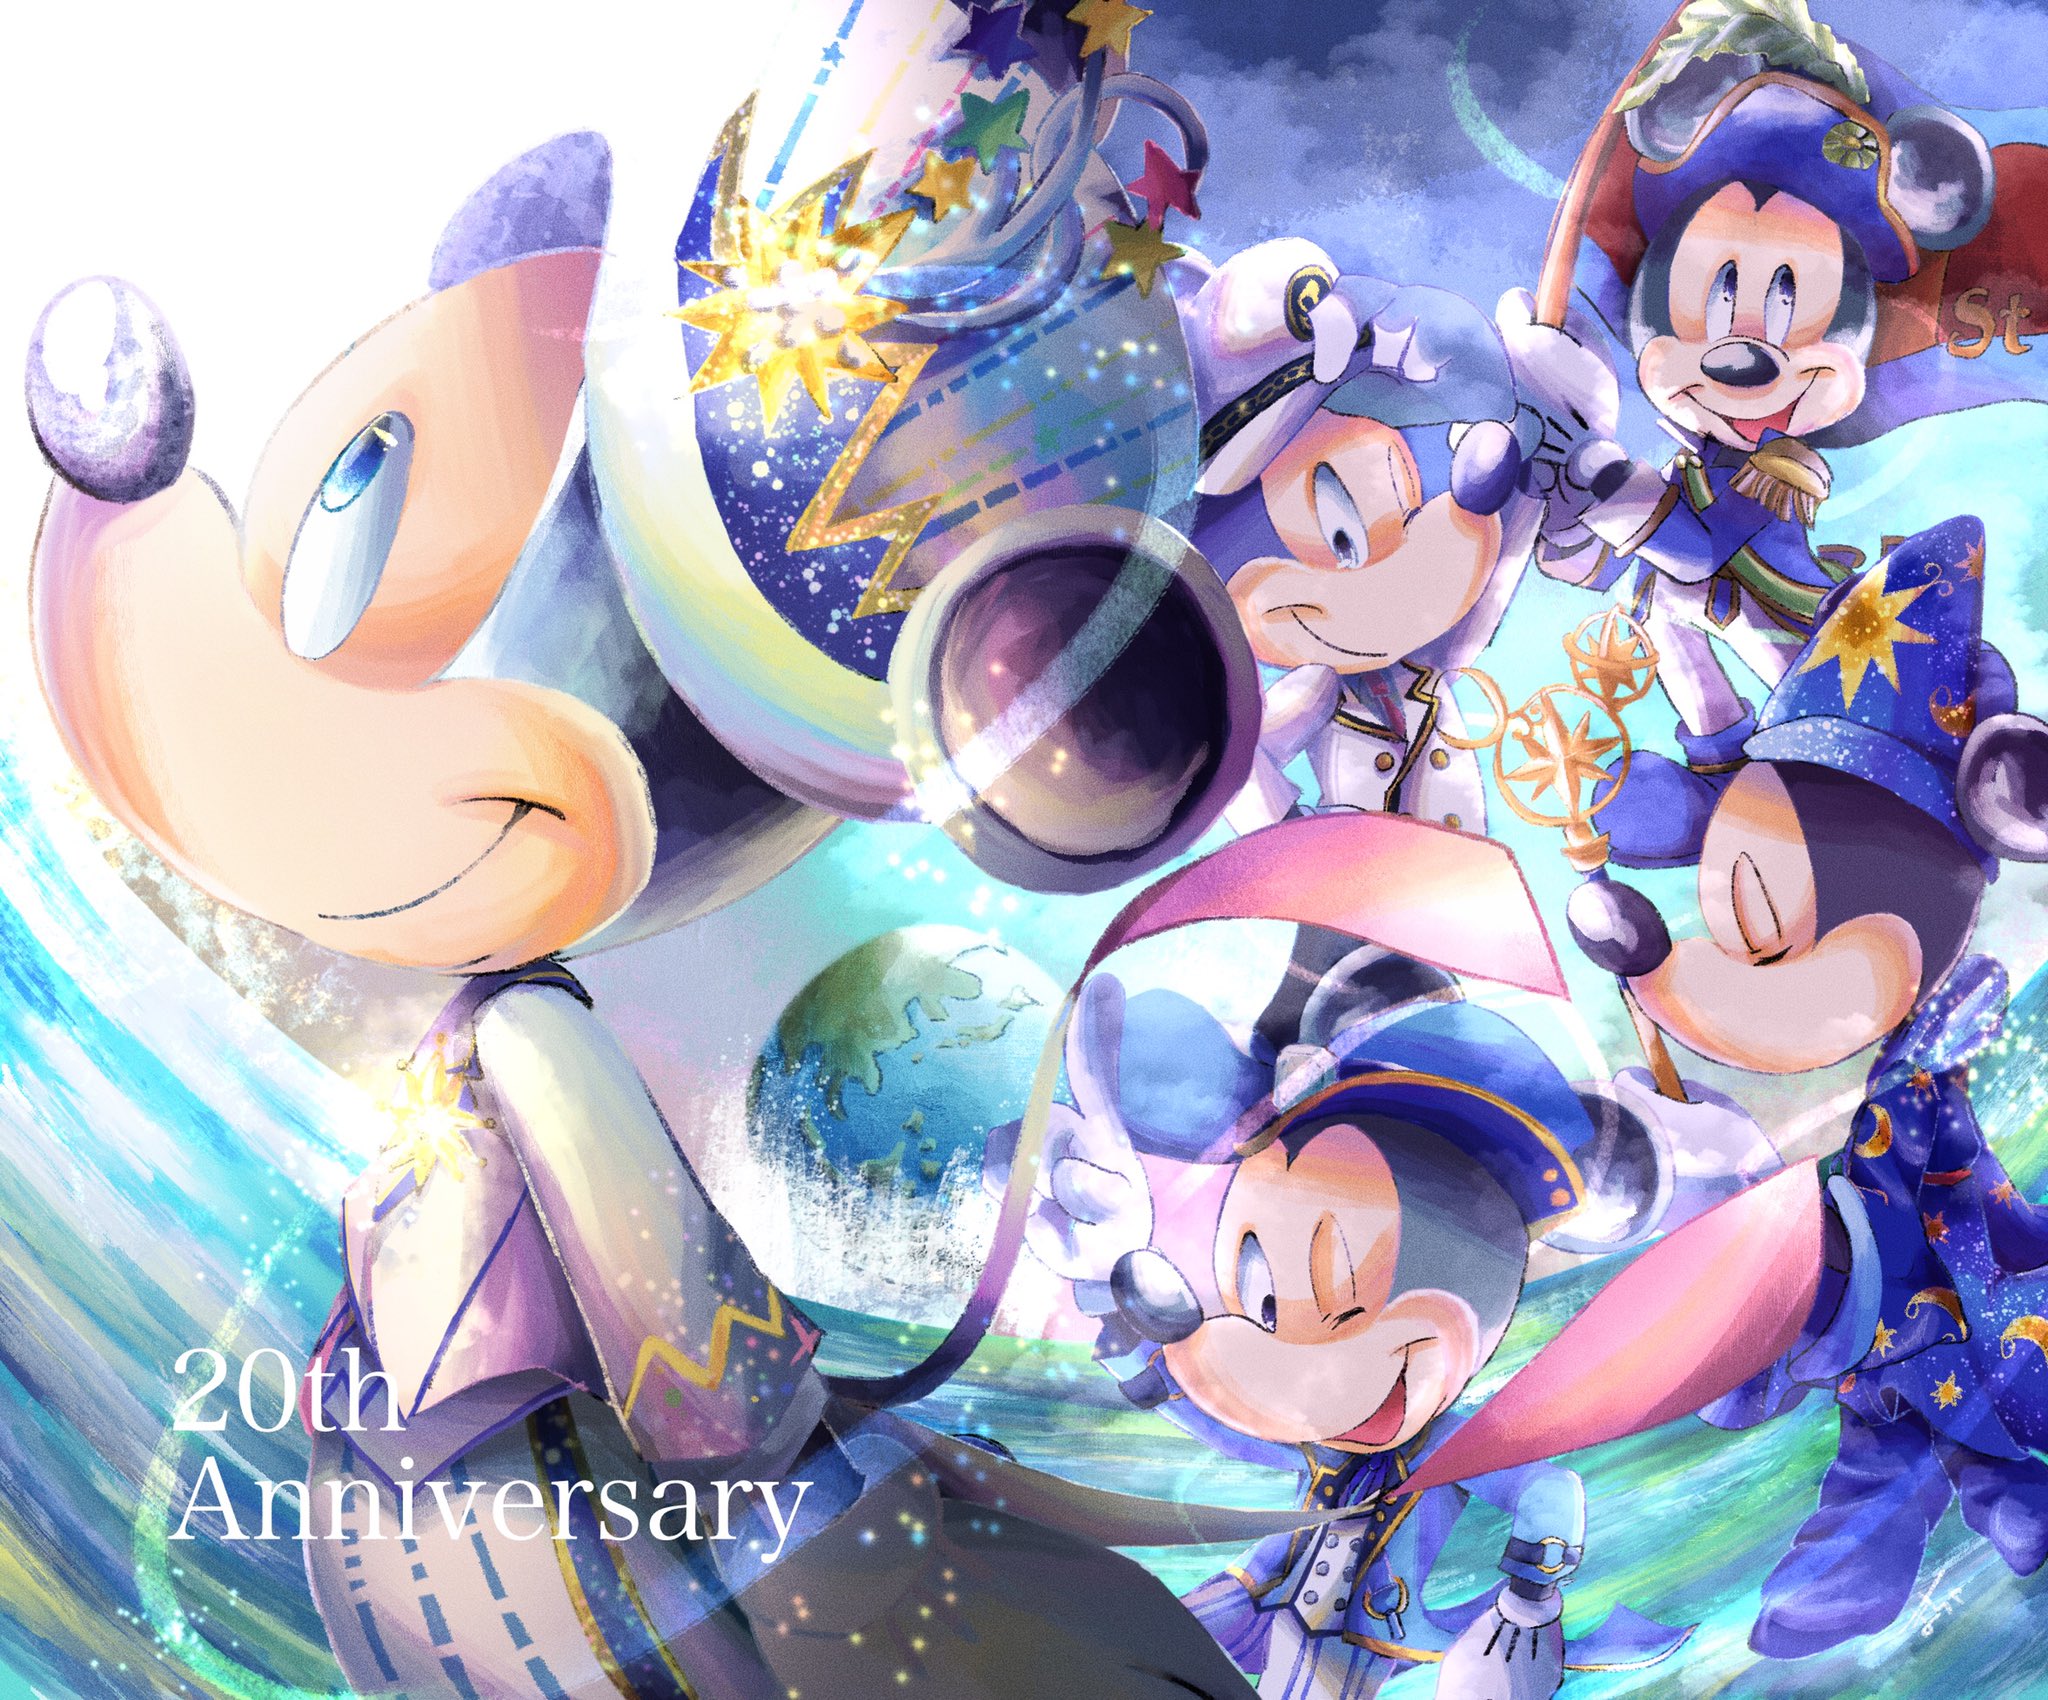 抹茶 Tokyo Disneysea th Anniversary 東京ディズニーシー周年 T Co gl4onr67 Twitter